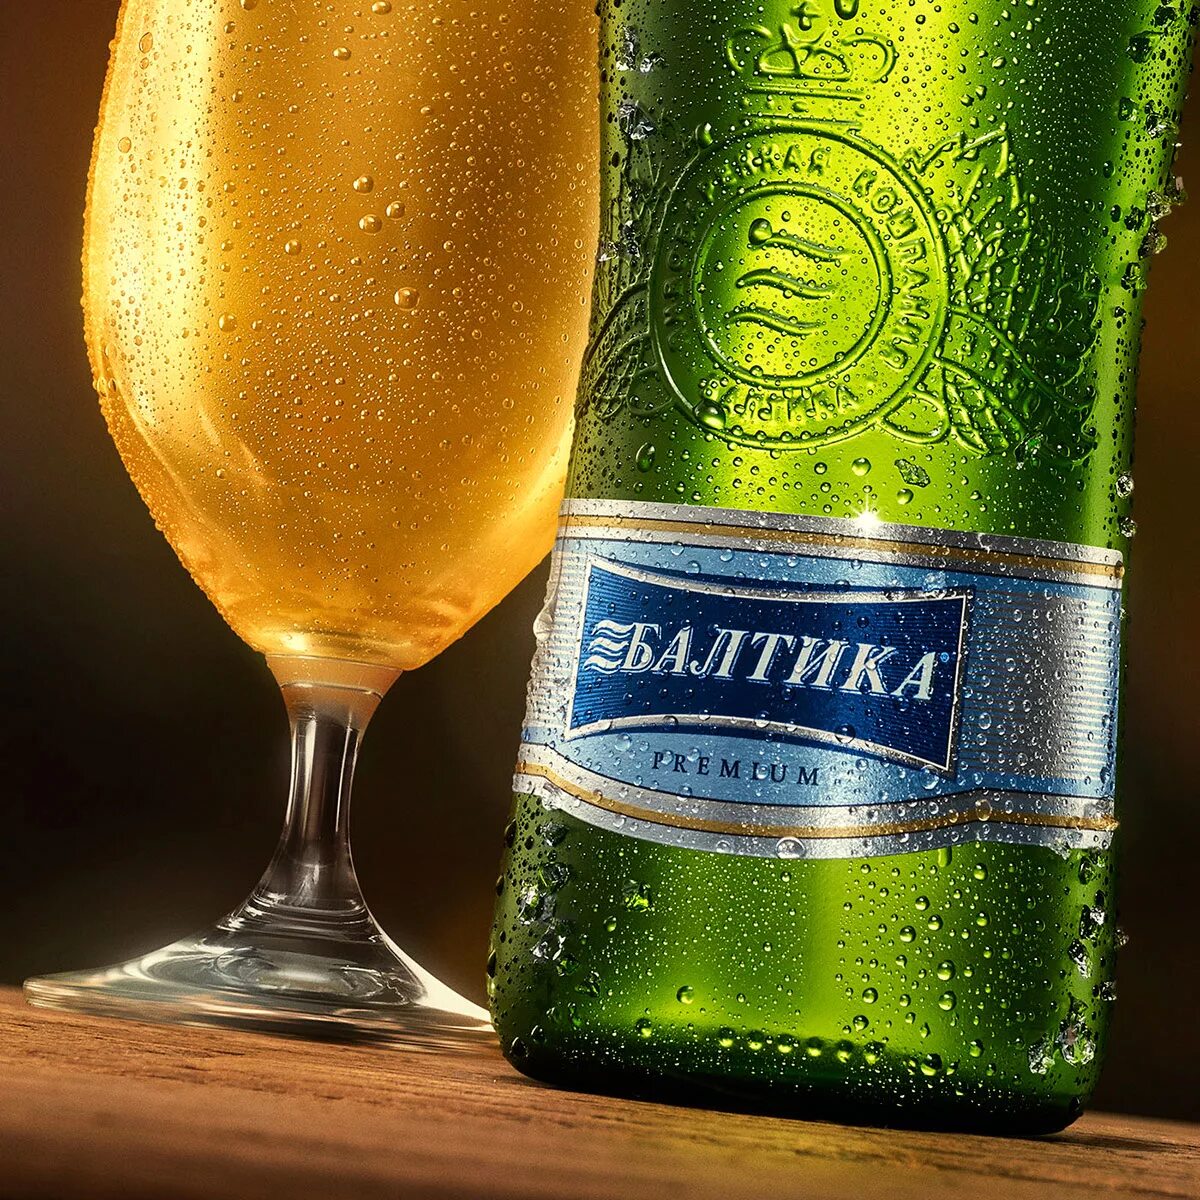 Пиво семерка. Пиво Балтика. Пиво Балтика 7. Пиво компании Балтика. Балт тикяа.